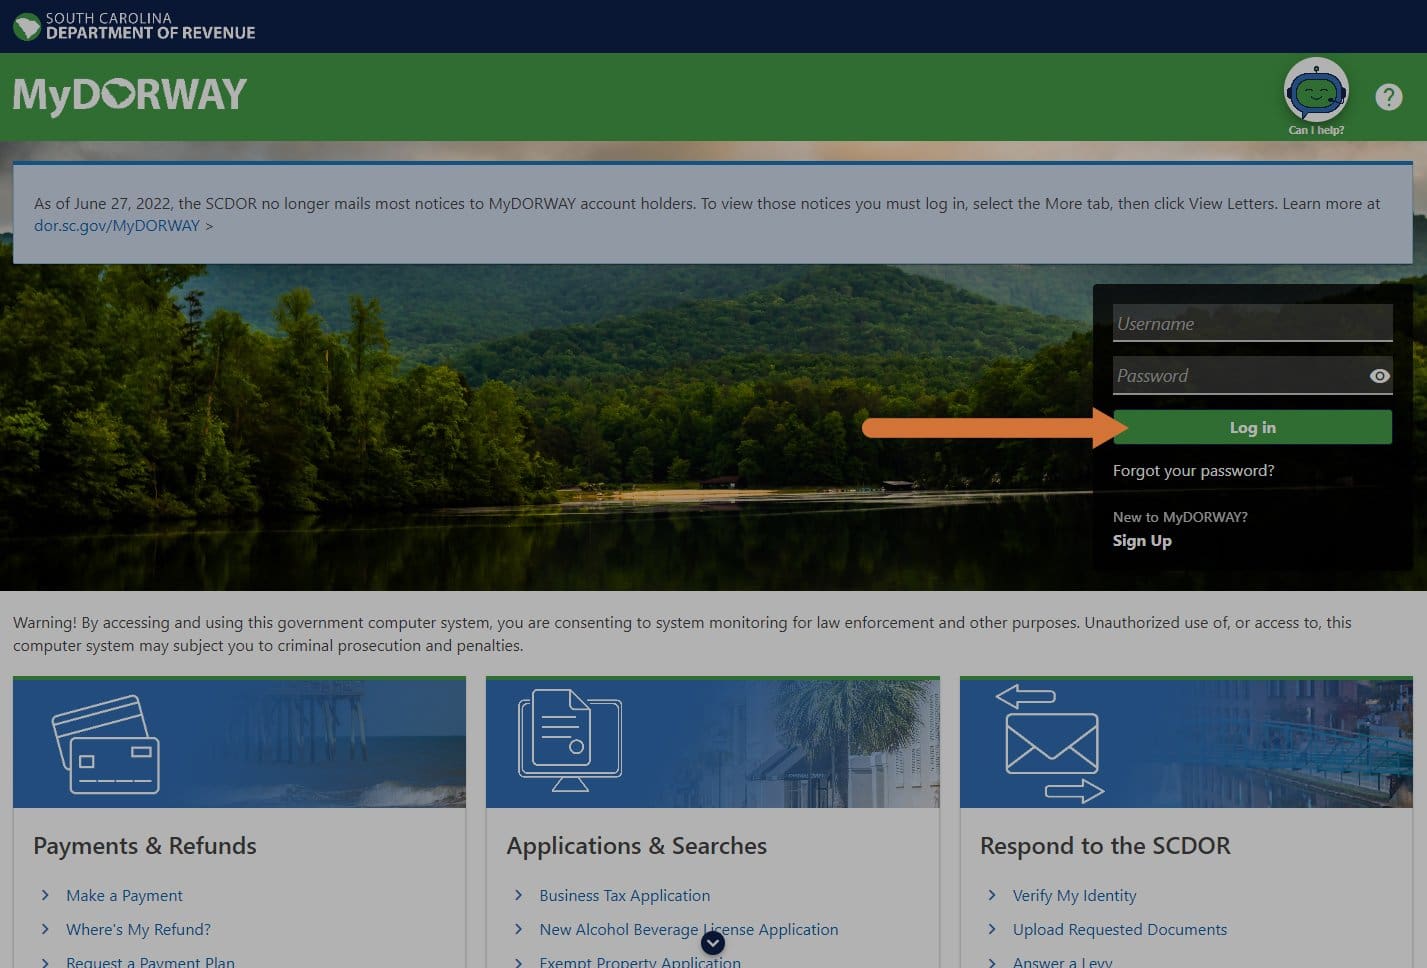 Screenshot of mydorway.dor.sc.gov website